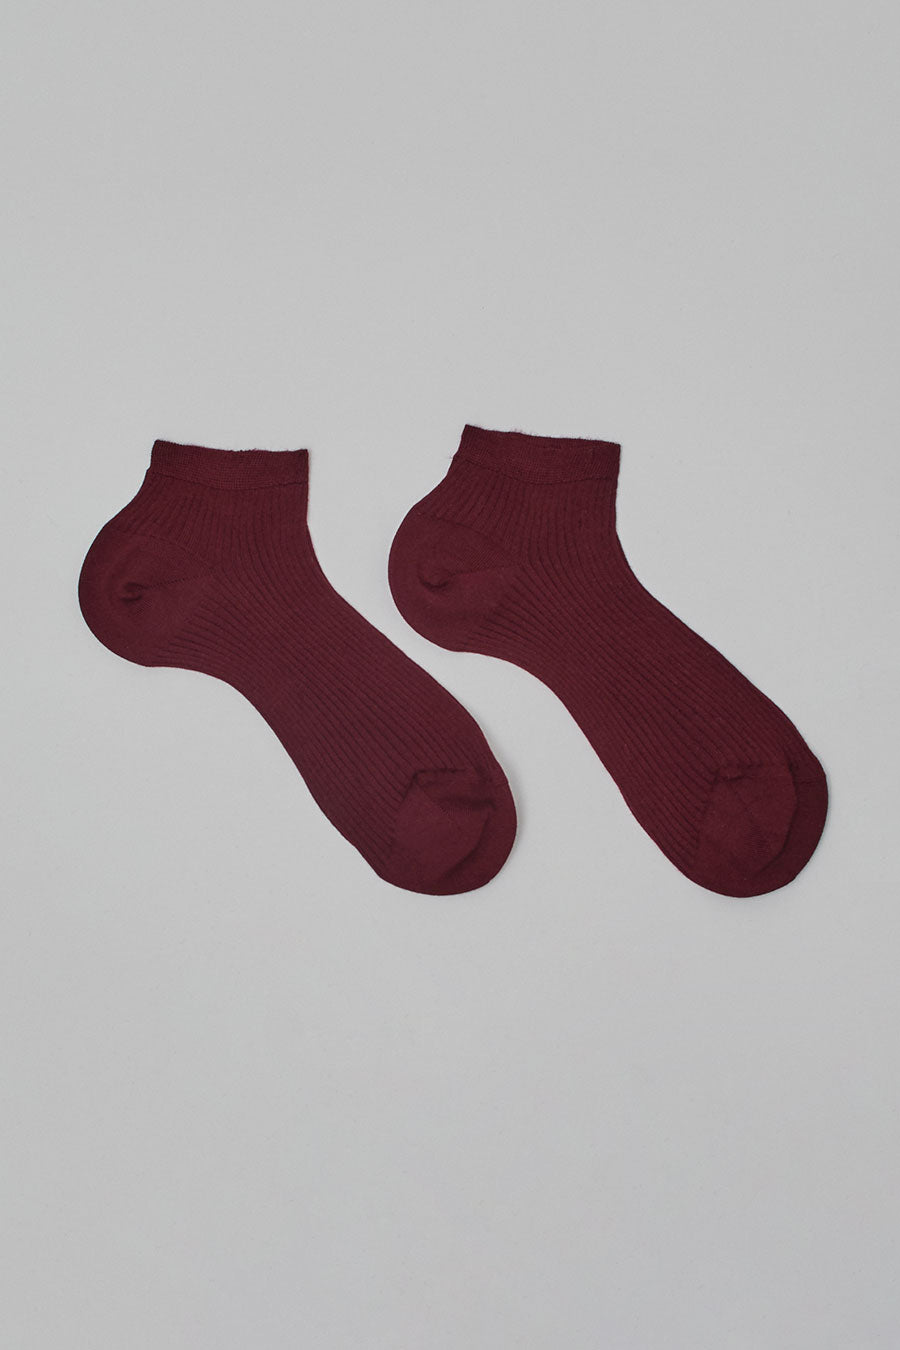 Maria La Rosa Organic Cotton Low Ankle Socks in Bordo